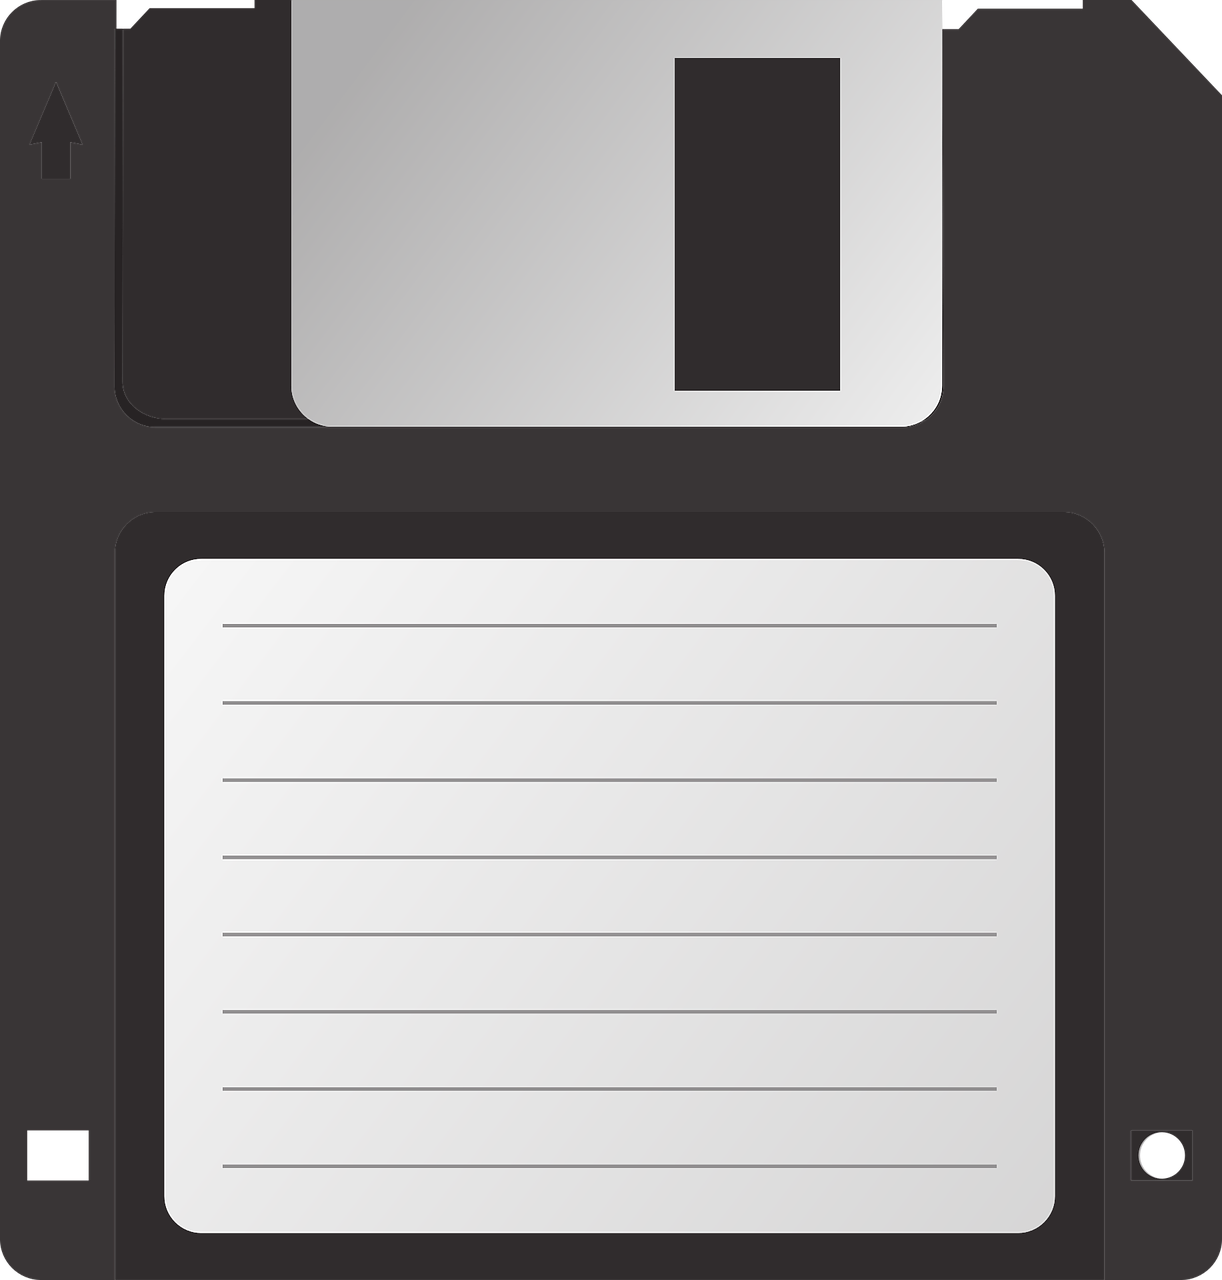 floppy disk data floppy free photo